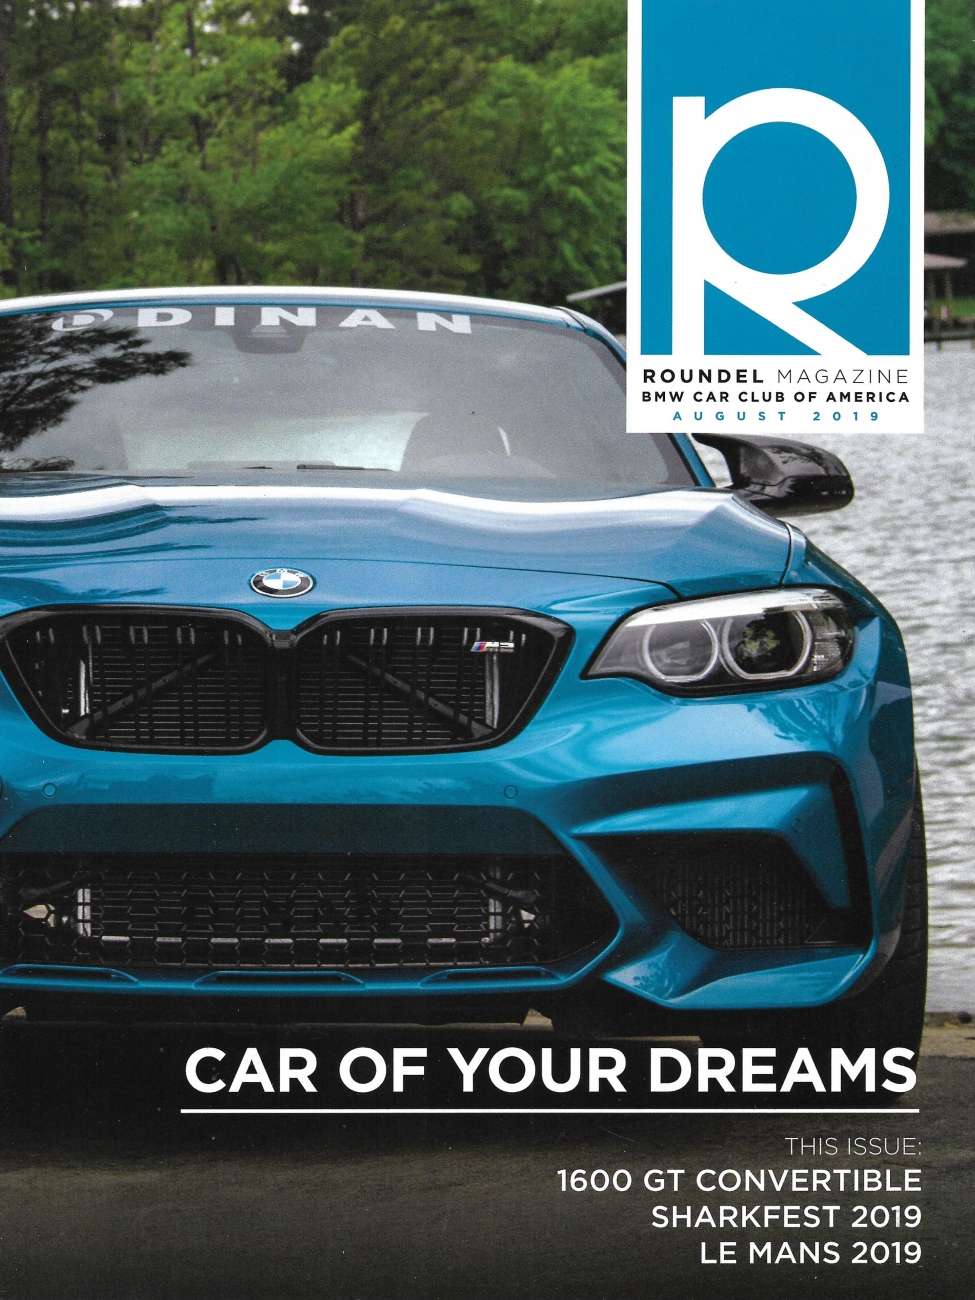 BMW Car Magazine